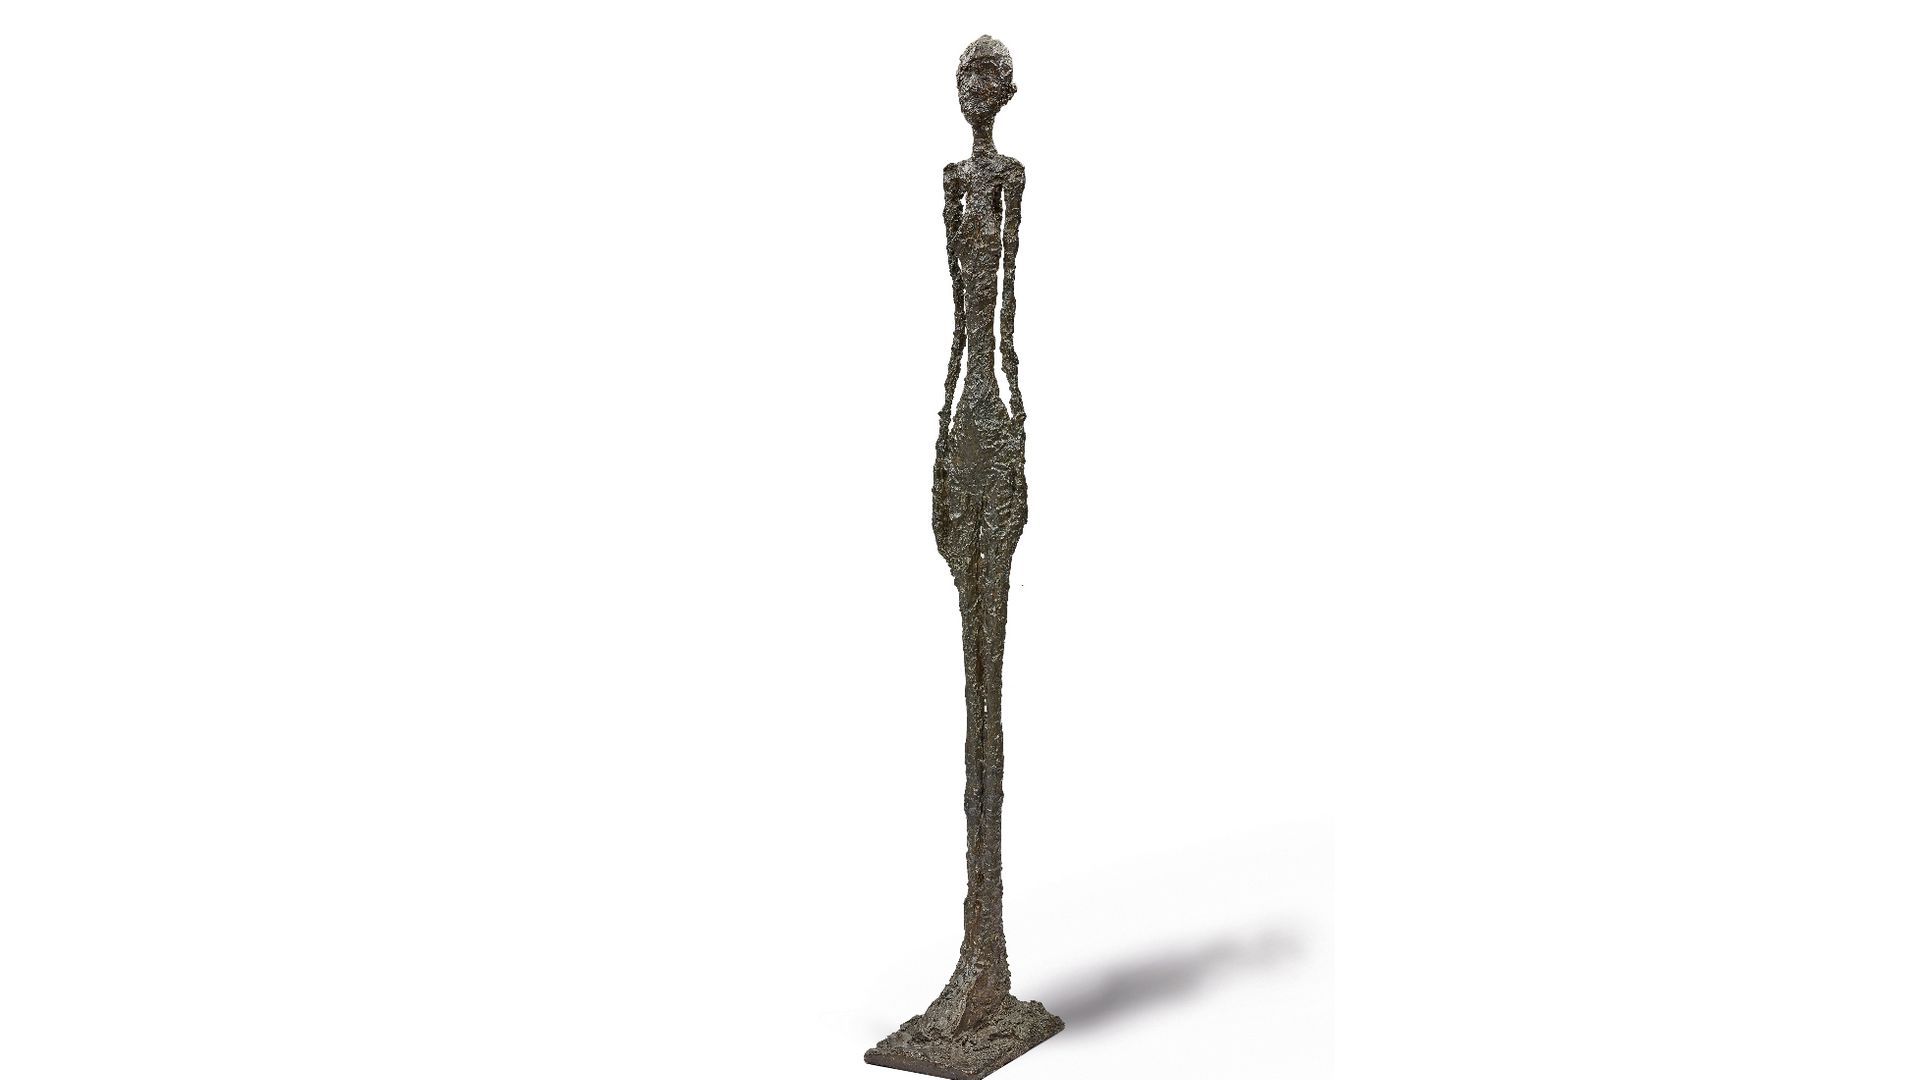 90 millions de dollars : c'est l'enchère d'entrée pour participer à la vente d'une statue rare de Giacometti chez Sotheby's